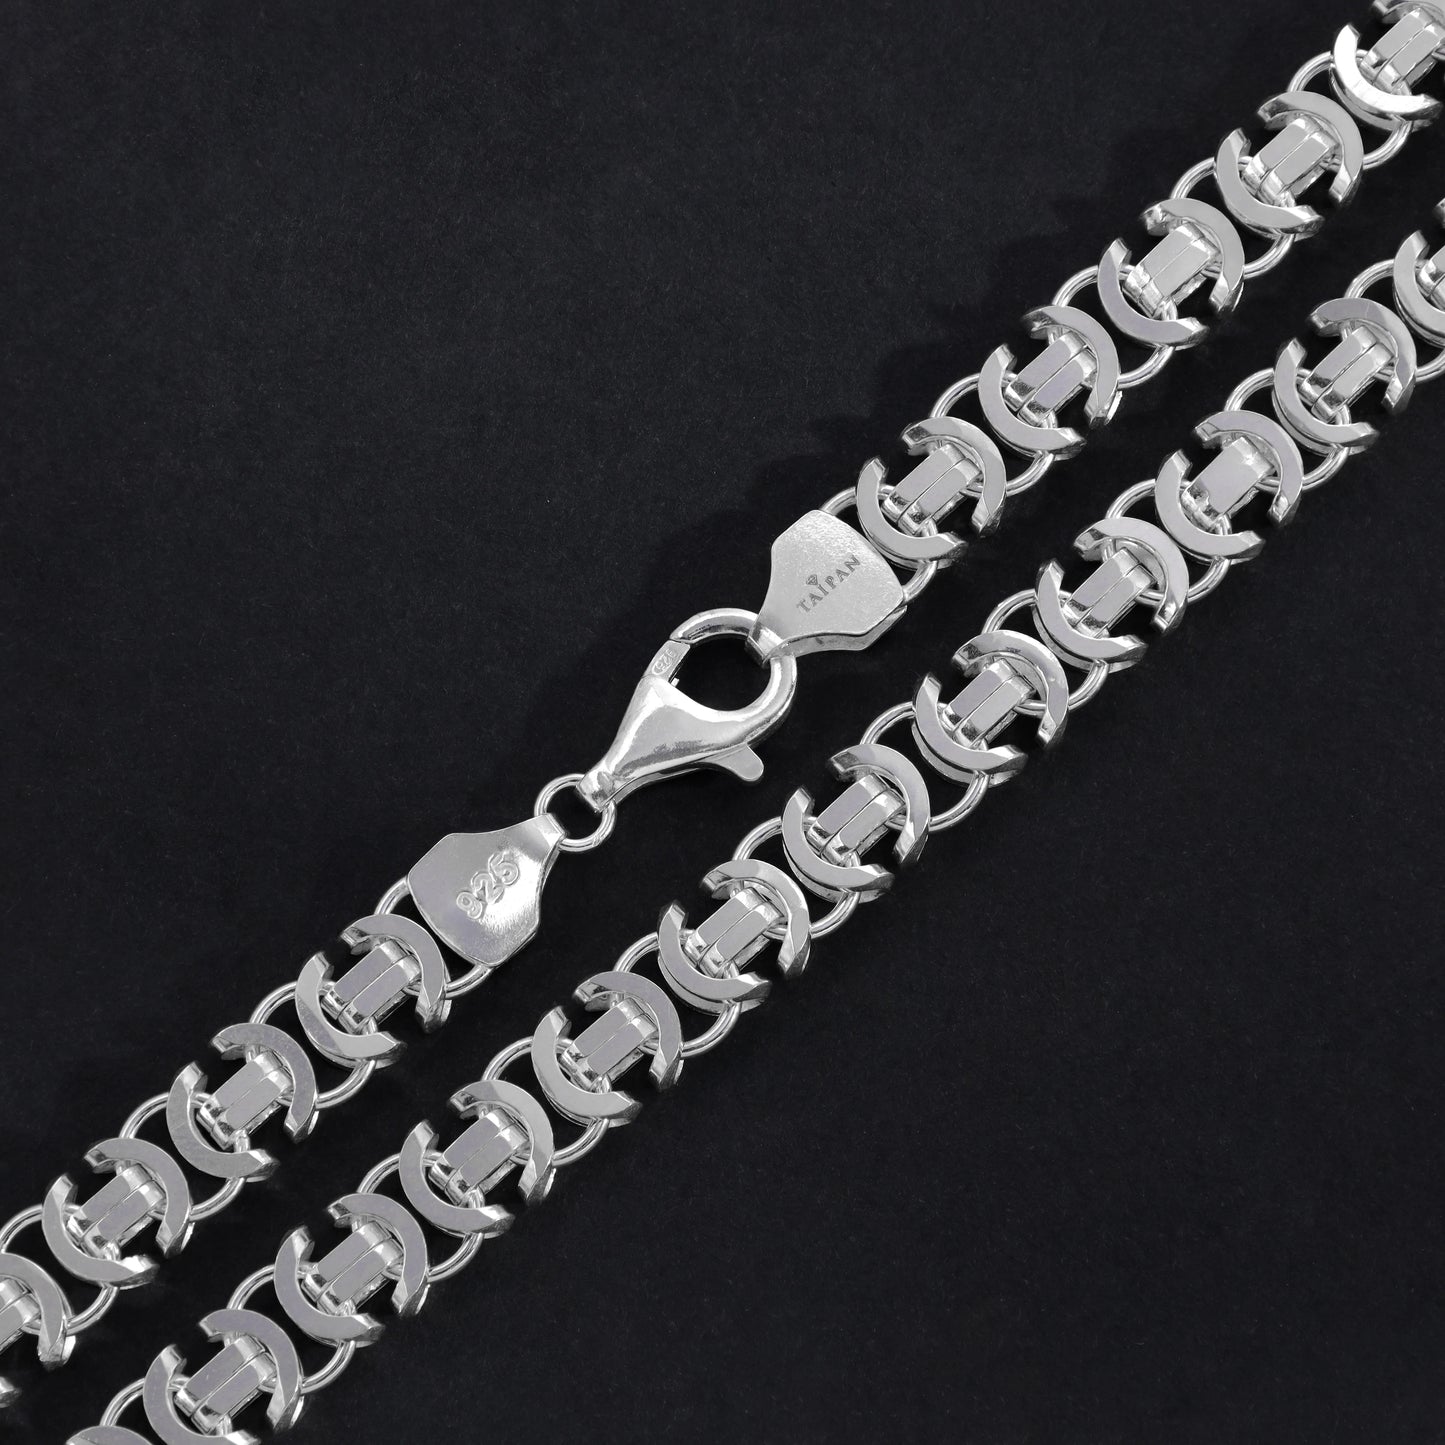 Flache Königskette Etrusker Kette 65cm lang 8,5mm breit 925 Sterling Silber (K858) - Taipan Schmuck